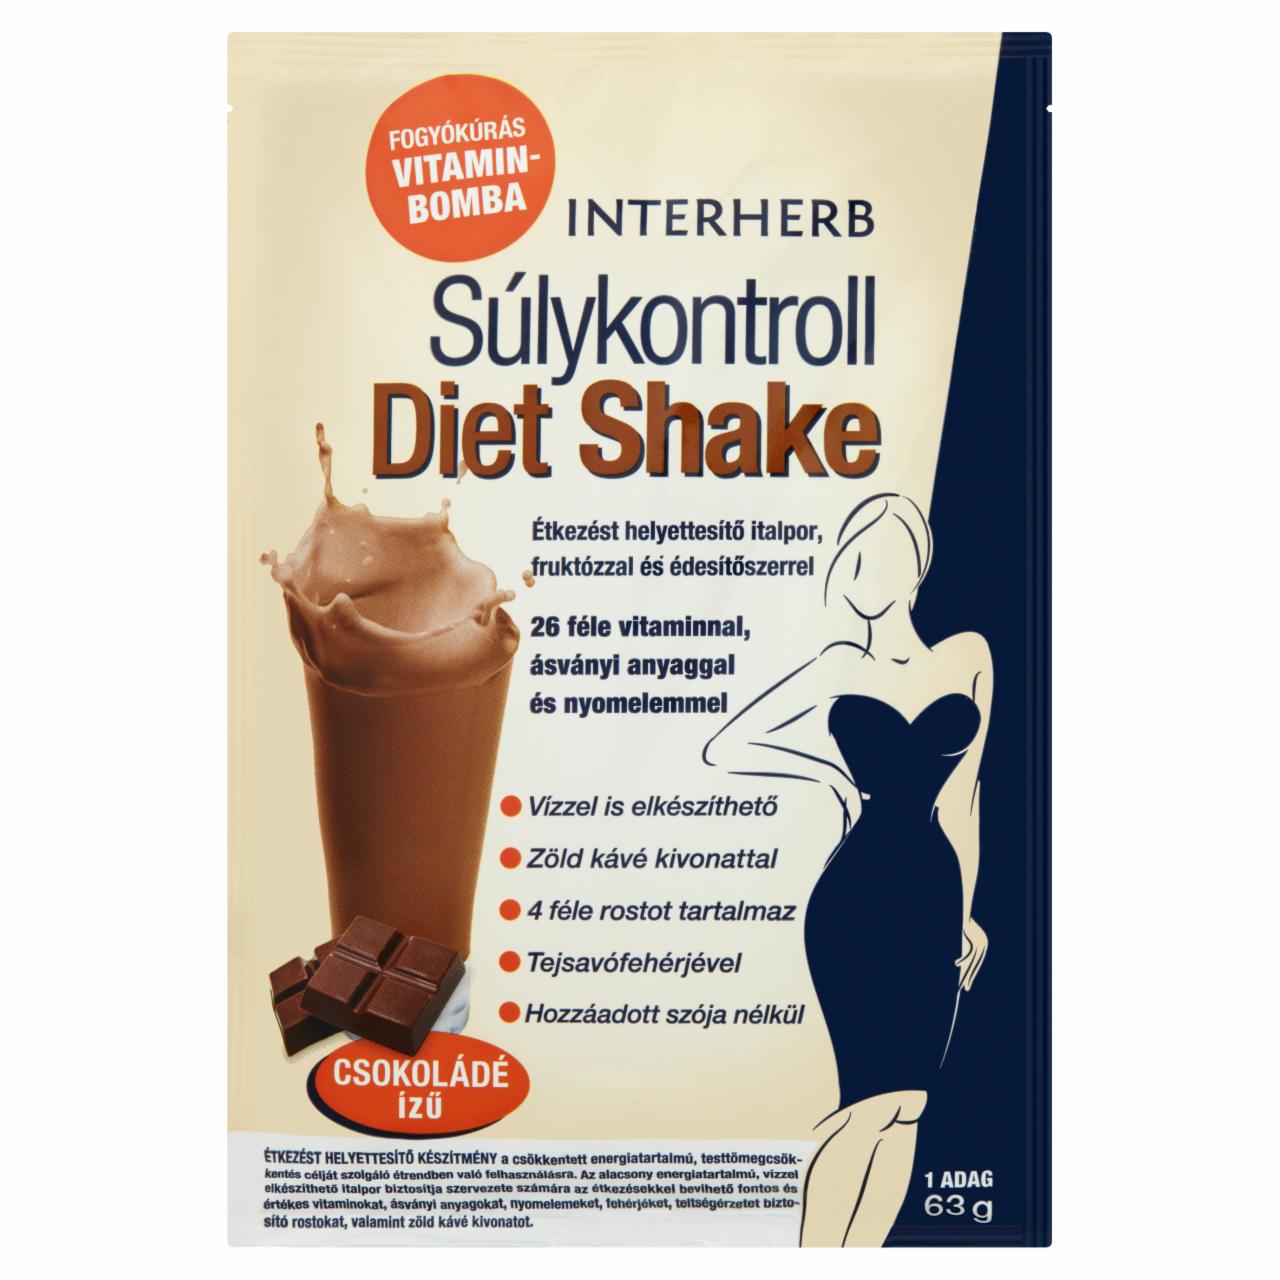 Képek - Interherb Súlykontroll Diet Shake csokoládé ízű étkezést helyettesítő italpor 63 g